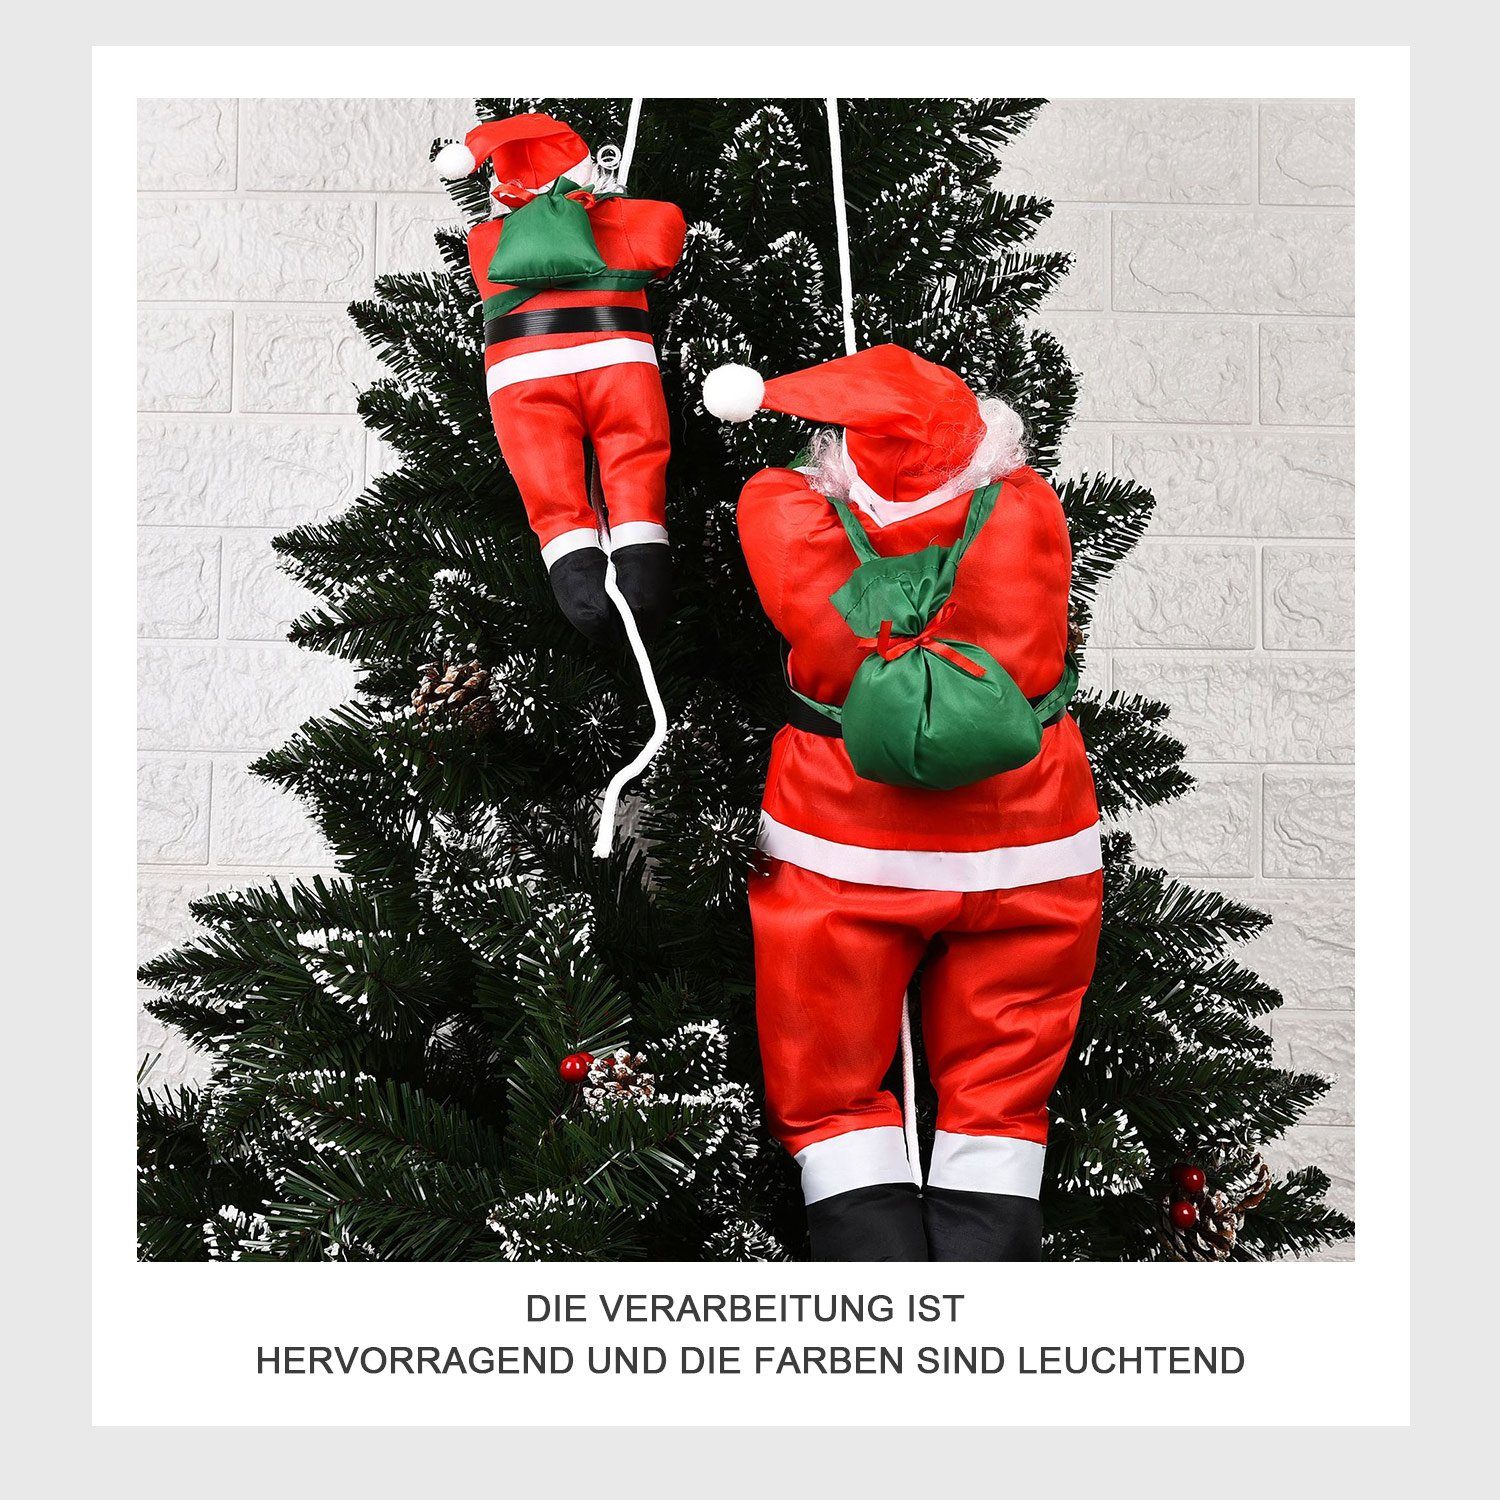 MAGICSHE Weihnachtsmann Kletterseil des Dekofiguren Höhe 60cm, Weihnachtsdekoration rot Weihnachtsmannes